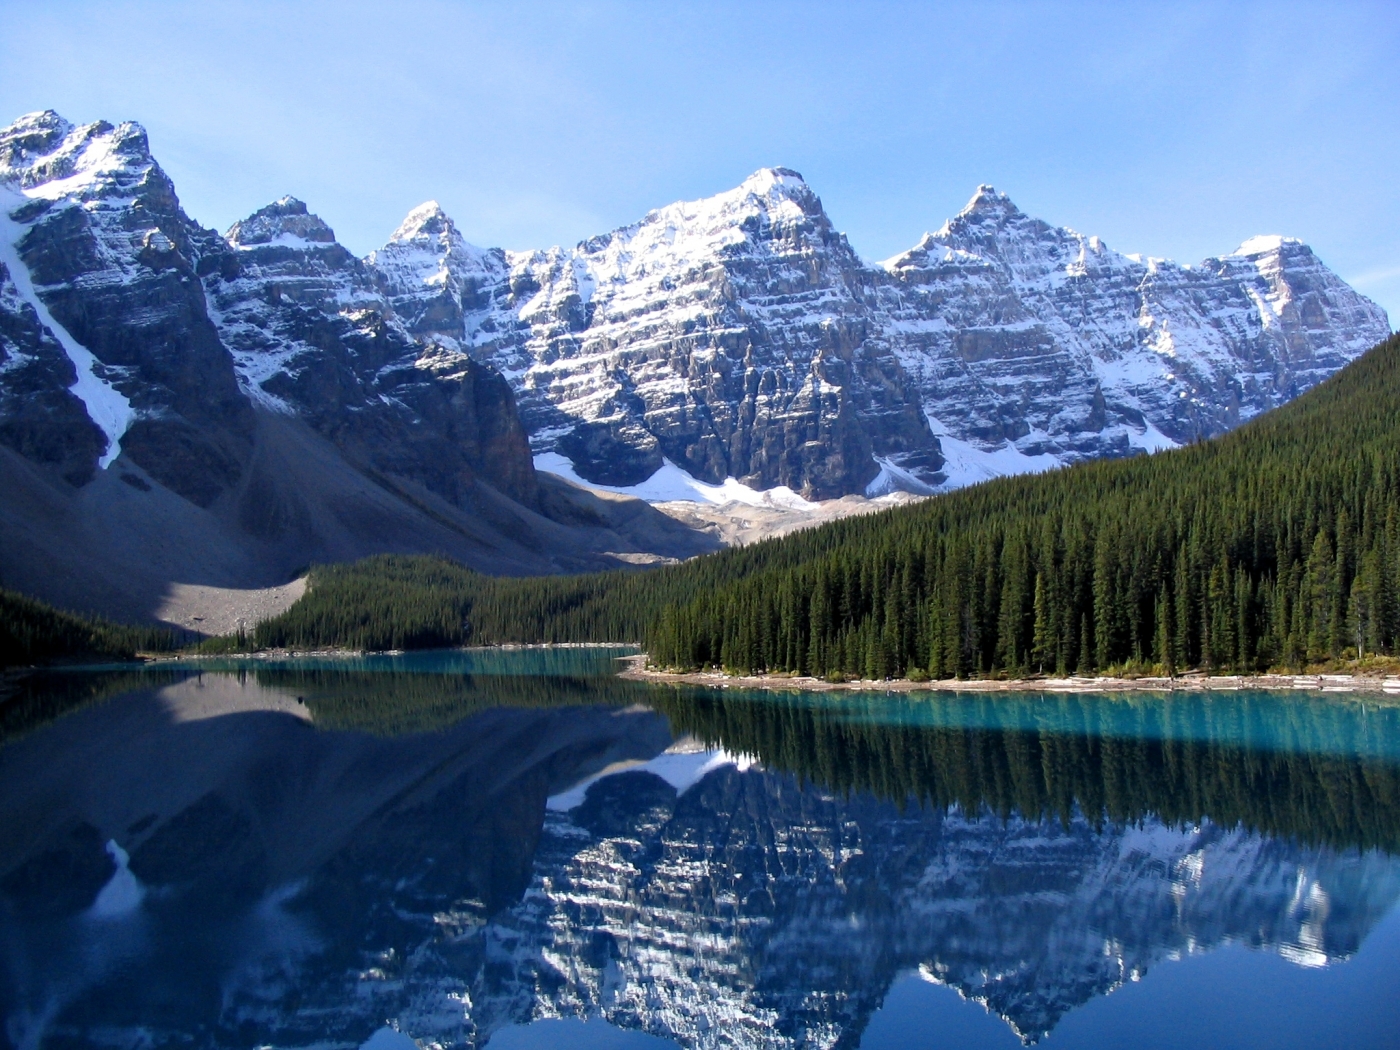 mountains, landscape, nature, lakes, blue Image for desktop